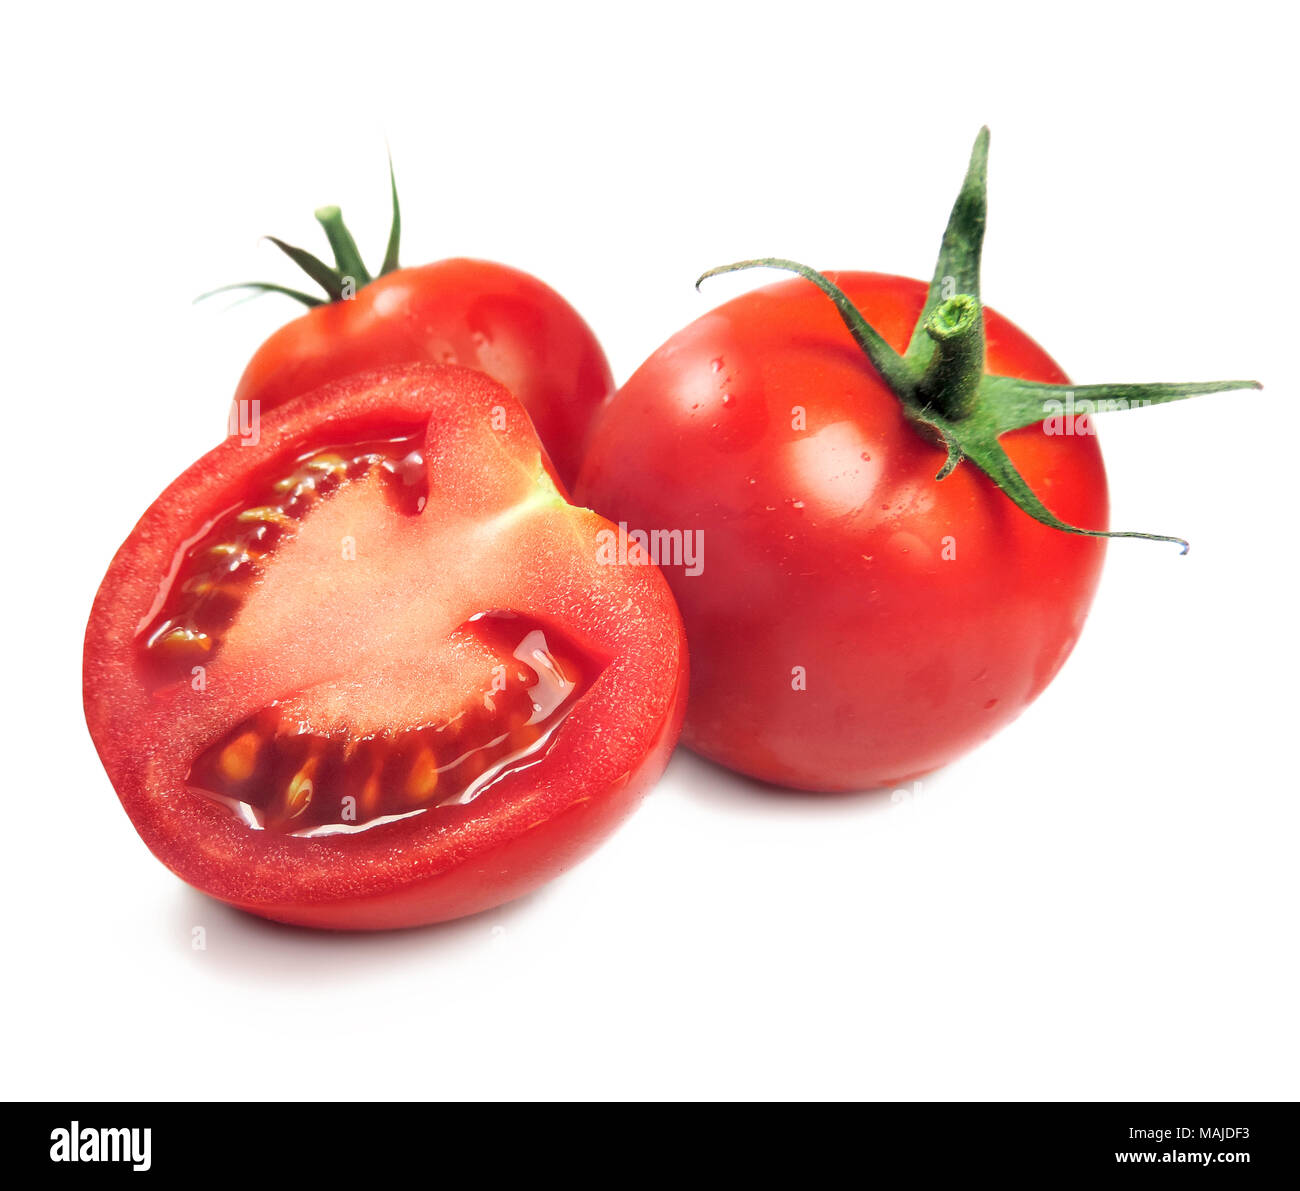 Les tomates mûres ou les tomates cerises, isolé sur fond blanc. Tranche de tomate fraîche et de chaussures blanches sur les tomates. Ingrédients de cuisson. Banque D'Images